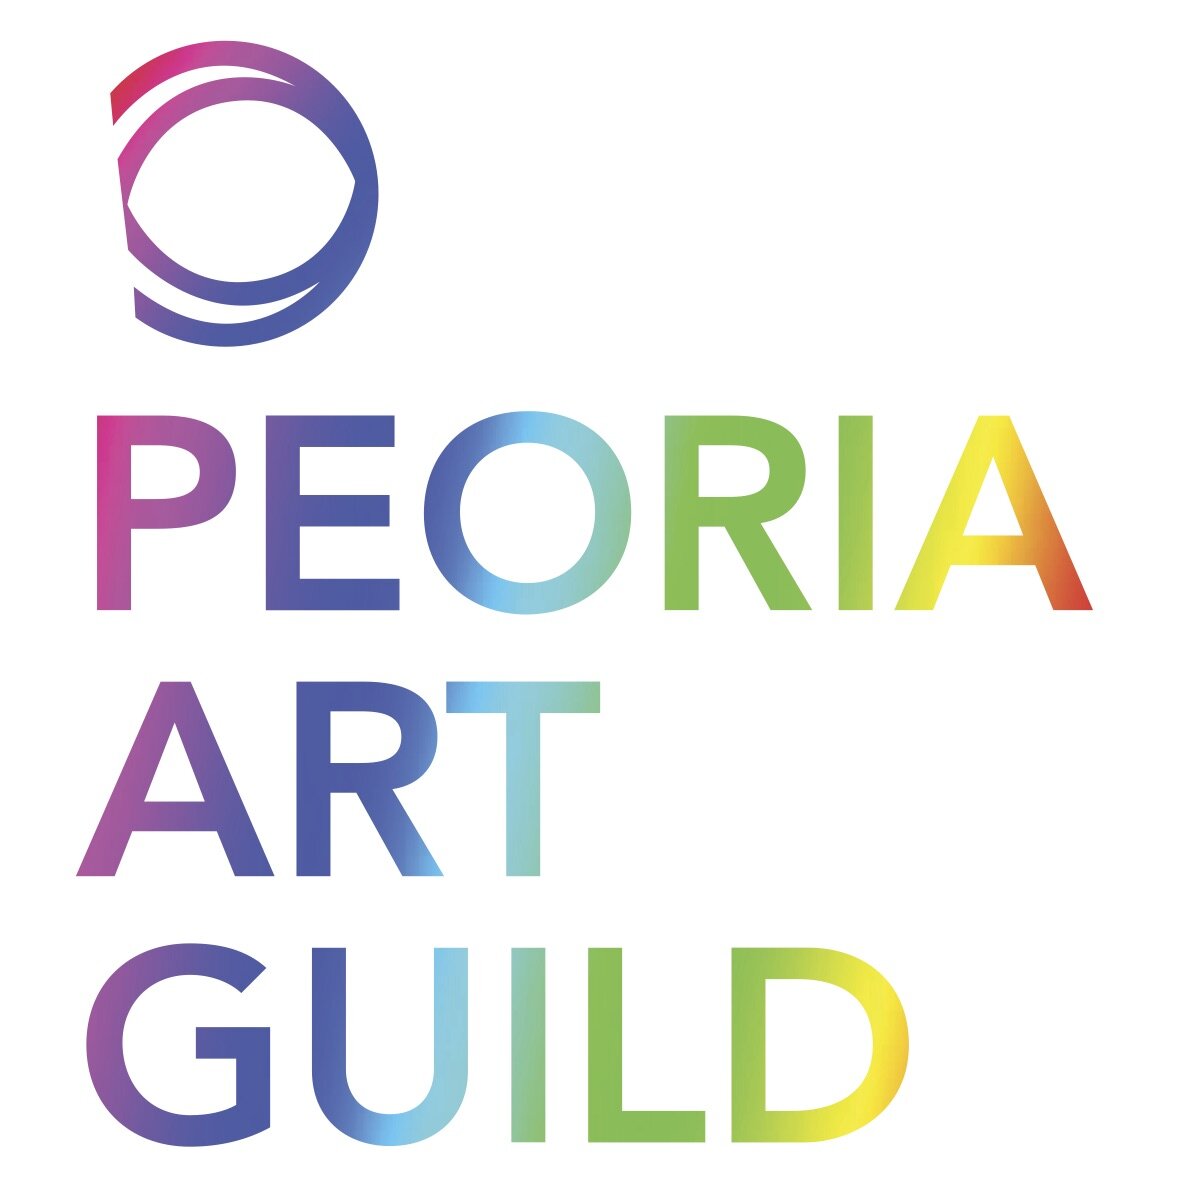 Peoria Art Guild